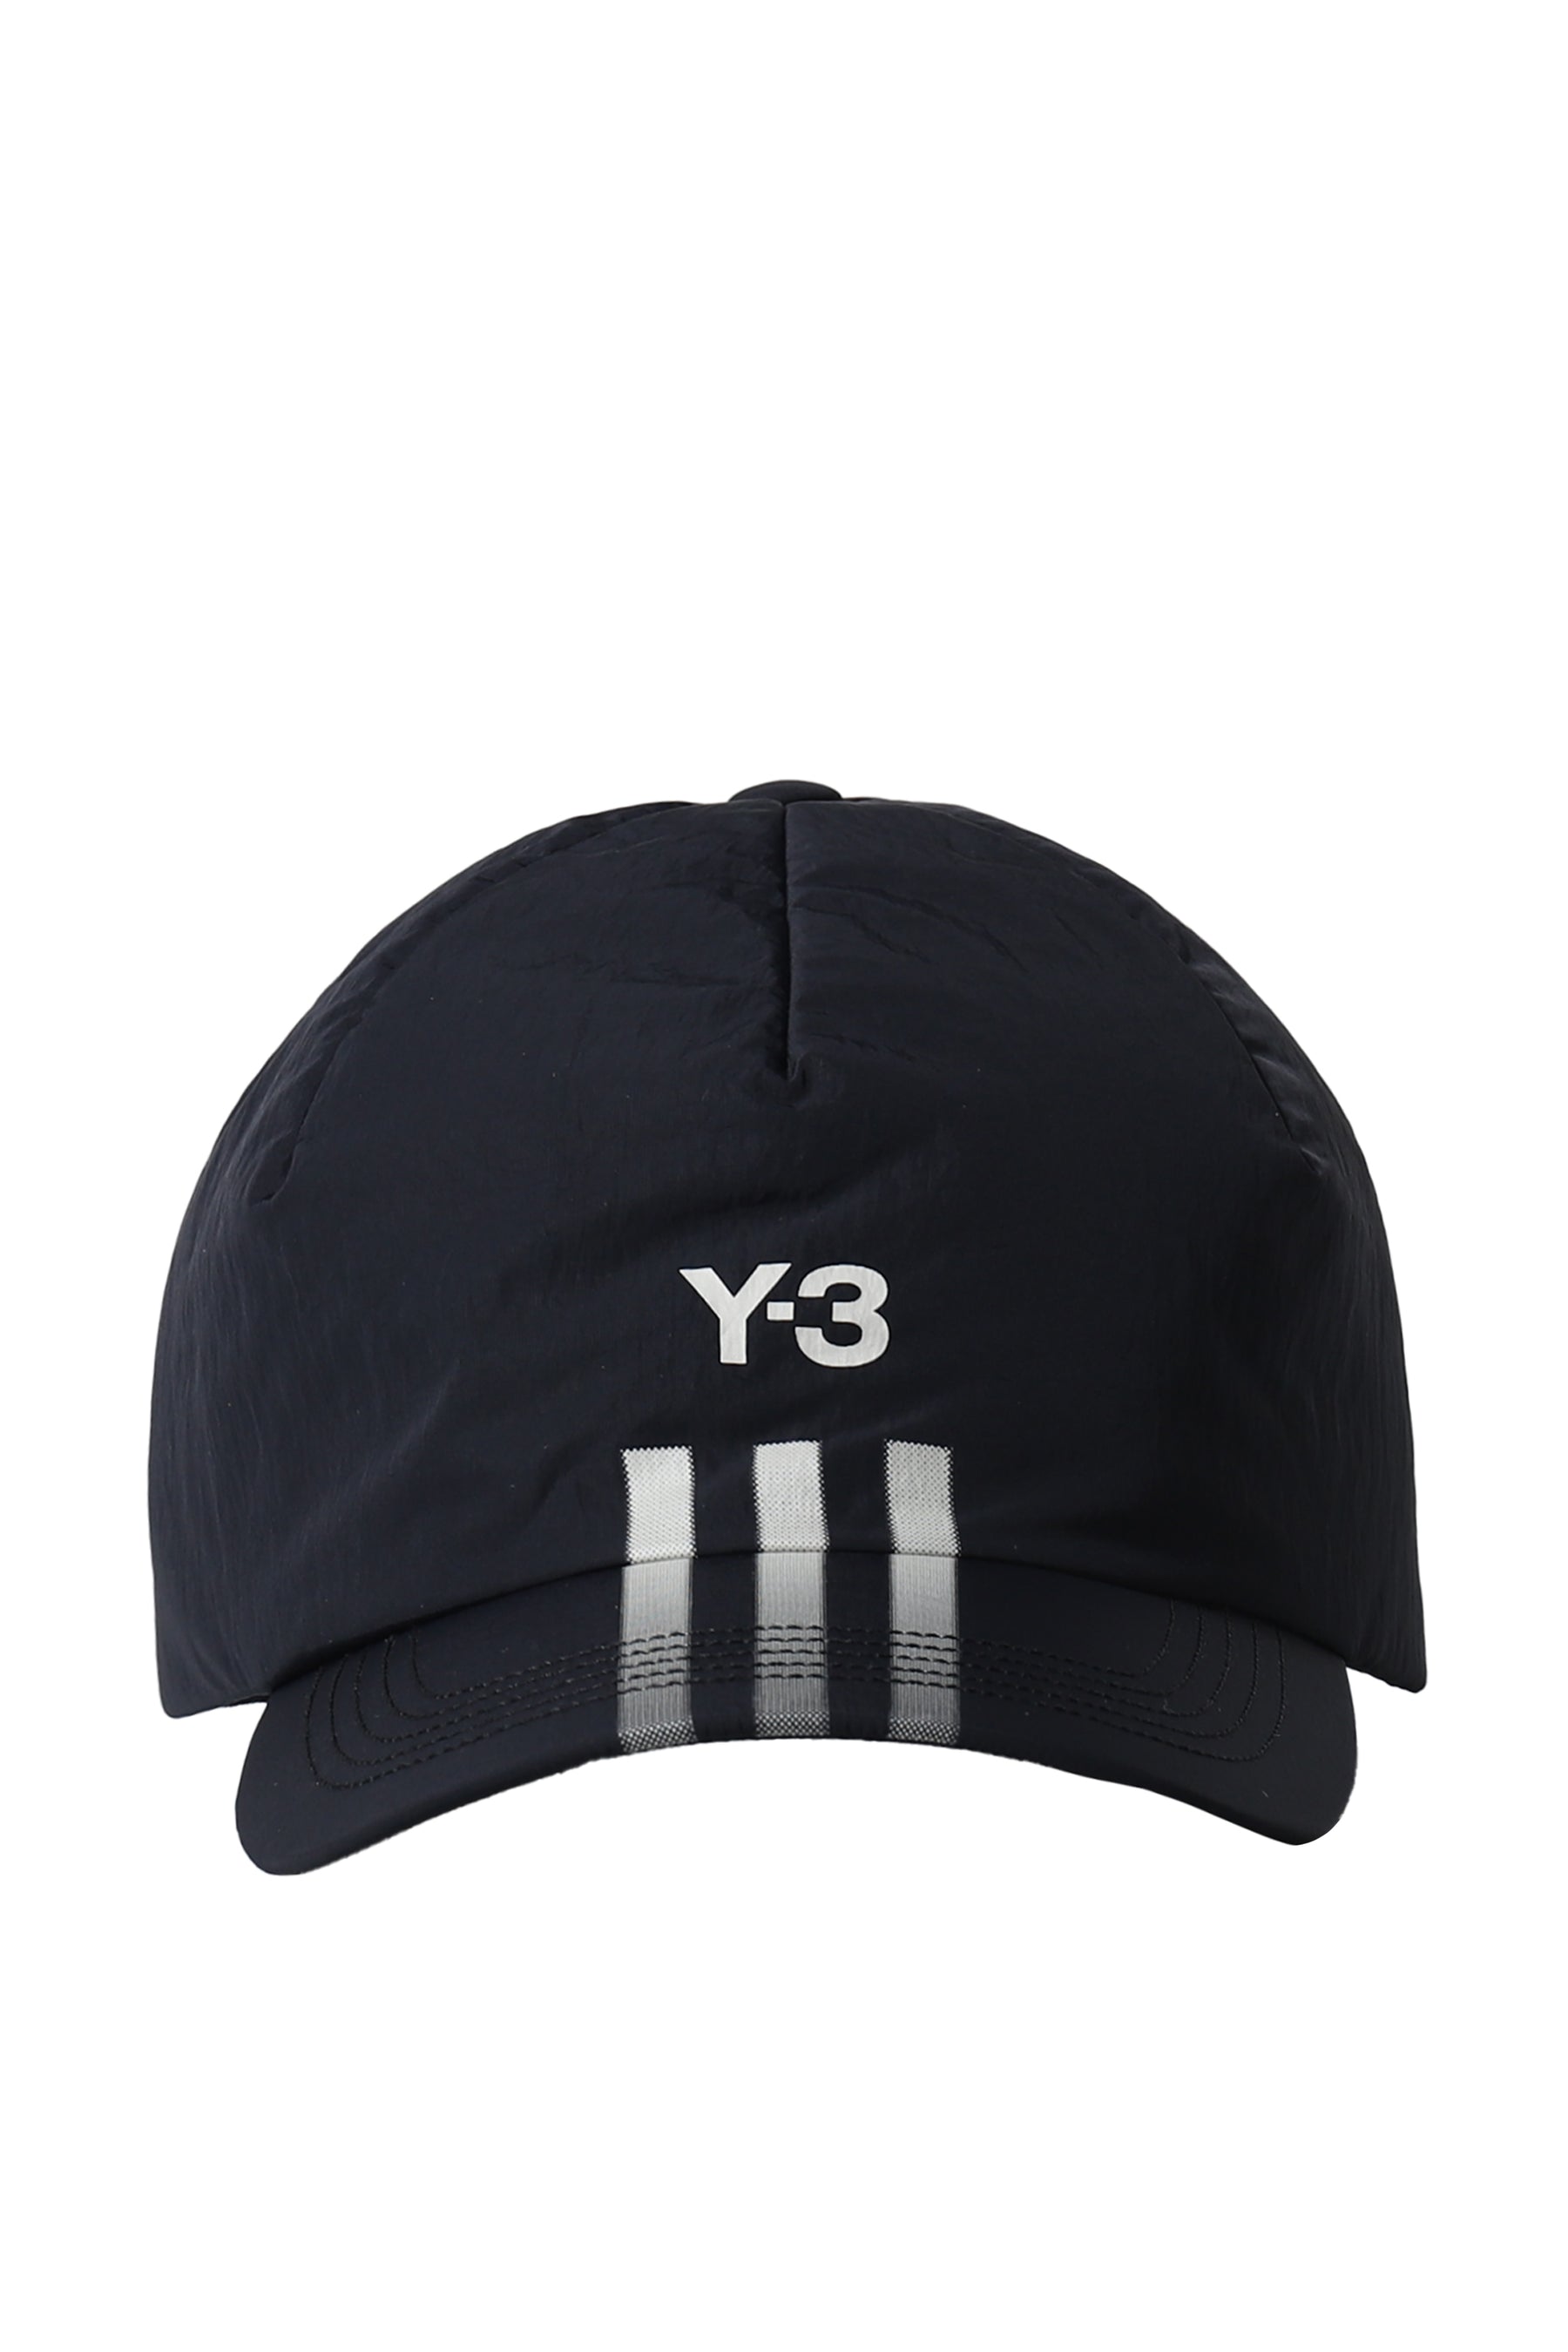 Y-3 STRP CAP BLACK / BLK